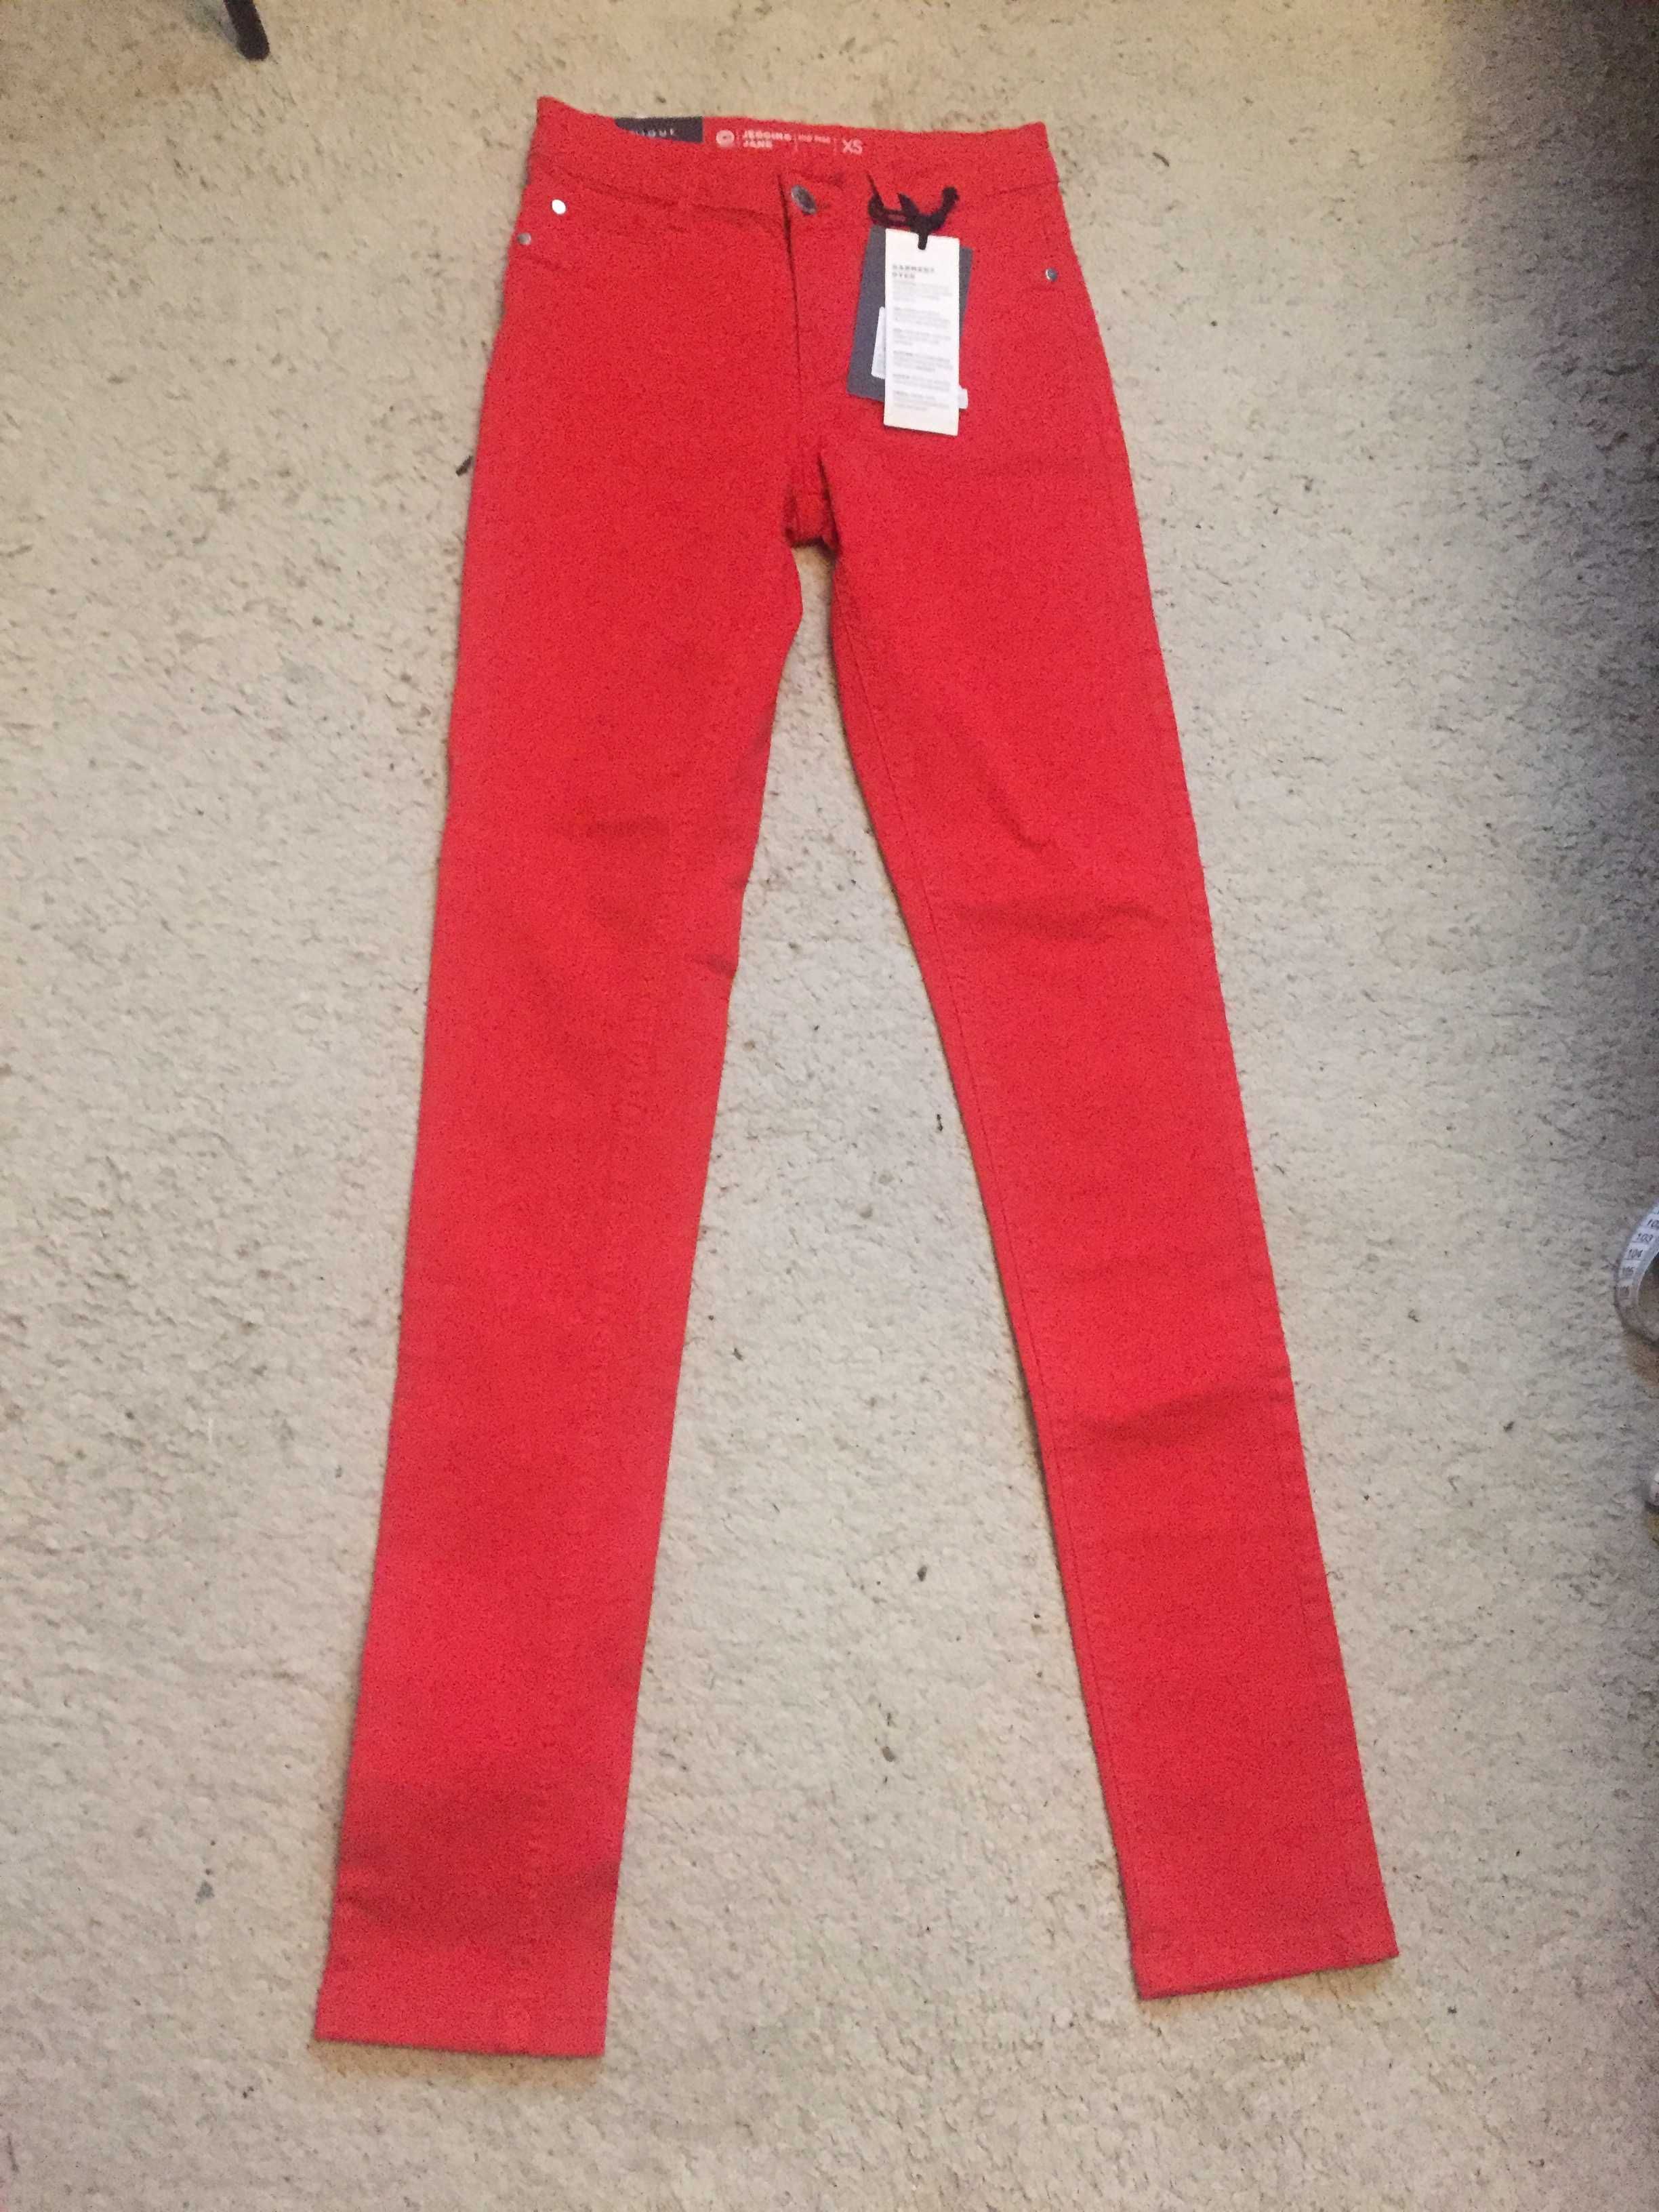 czerwone jeansy spodnie CUBUS rozmiar xs nowe